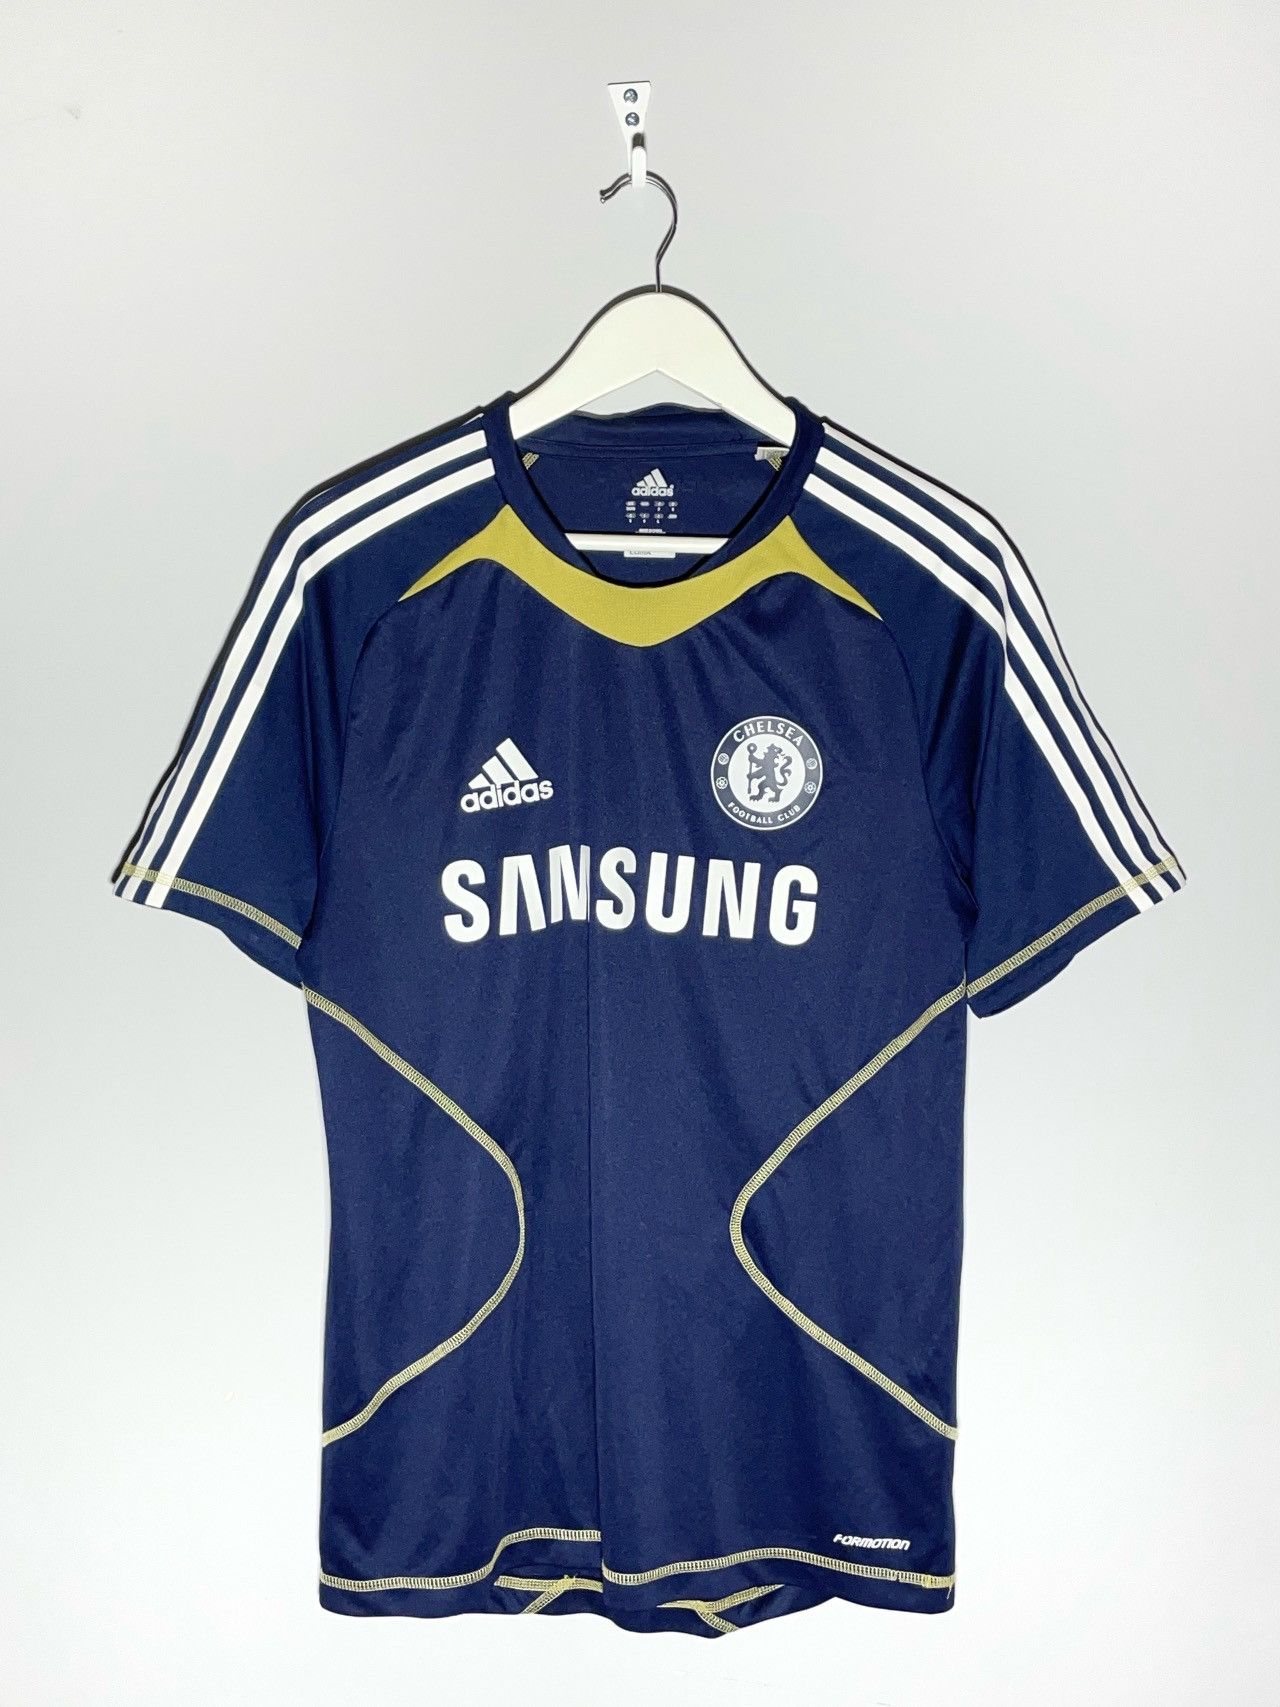 Adidas Chelsea FC Adidas 2010/11 Training Y2k Football Shirt | Grailed